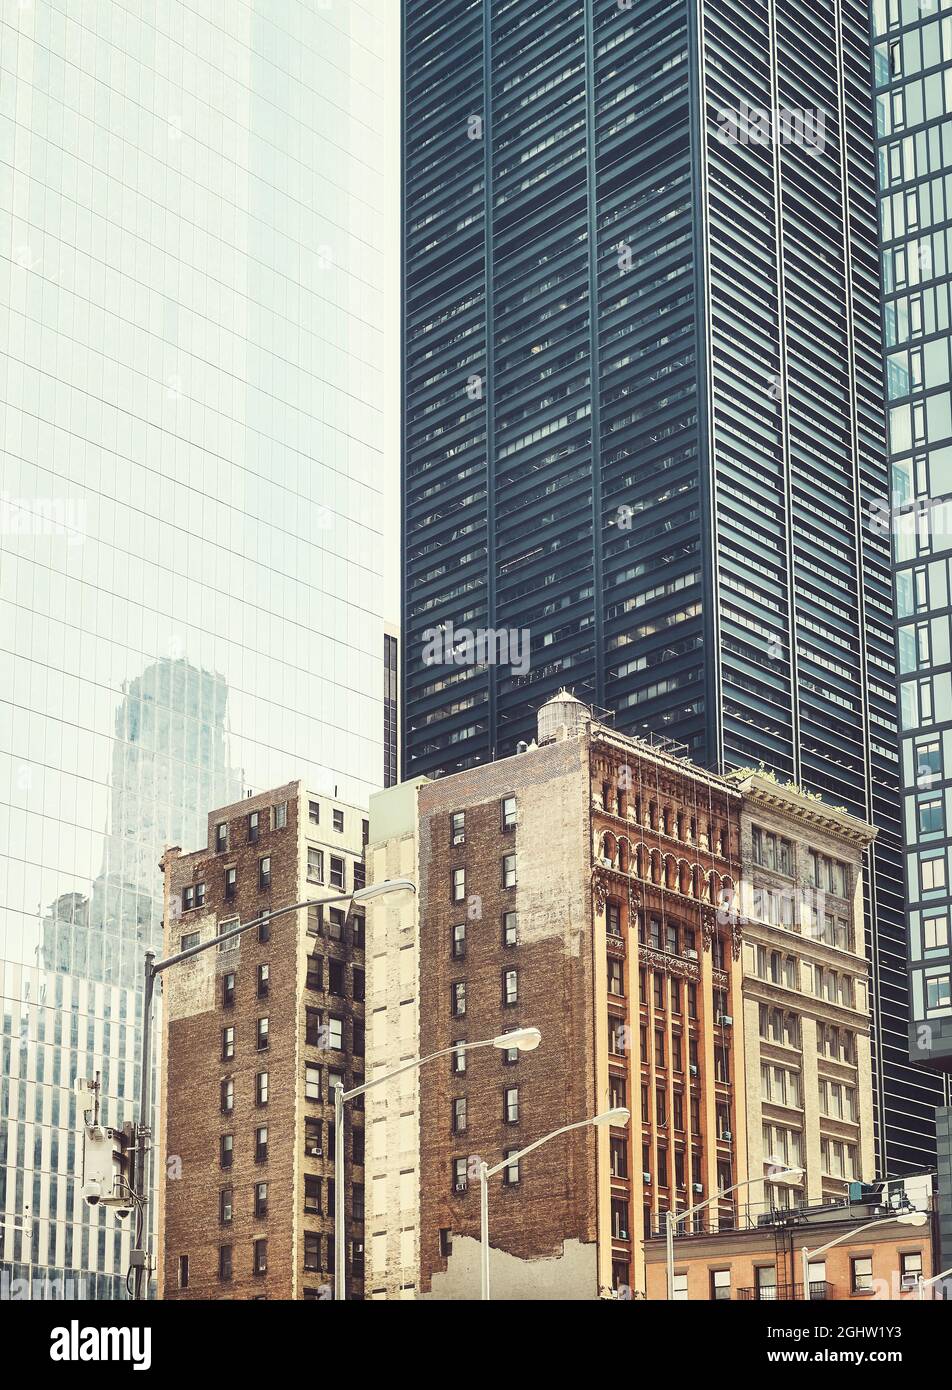 Vieux bâtiments de maison de ville entre les gratte-ciels modernes à New York, rétro couleur tons image, Etats-Unis. Banque D'Images